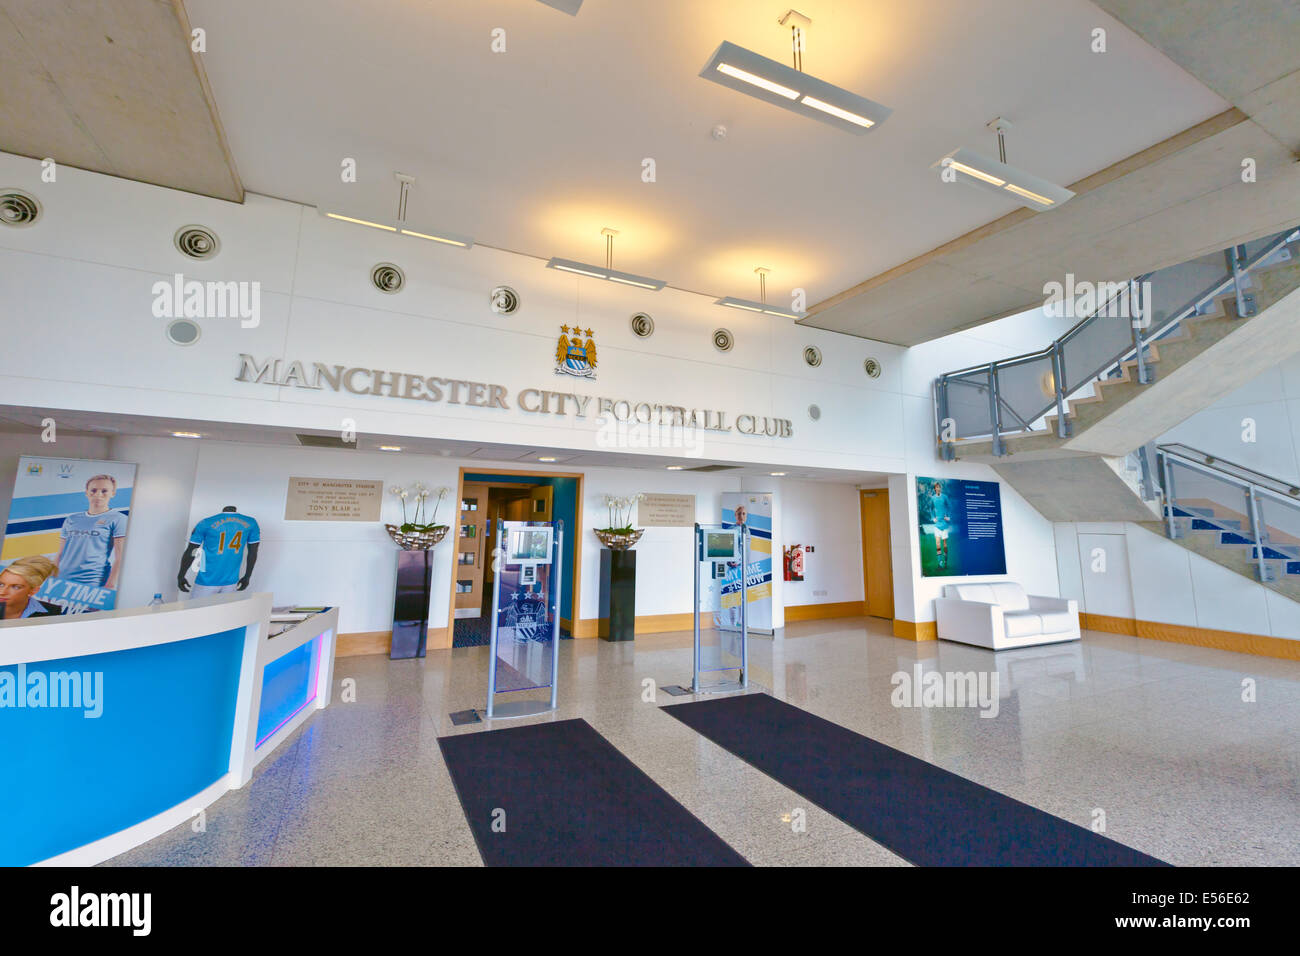 Eingang zum Etihad Stadium, die Heimat von Manchester City English Premier League Fußballverein. Stockfoto